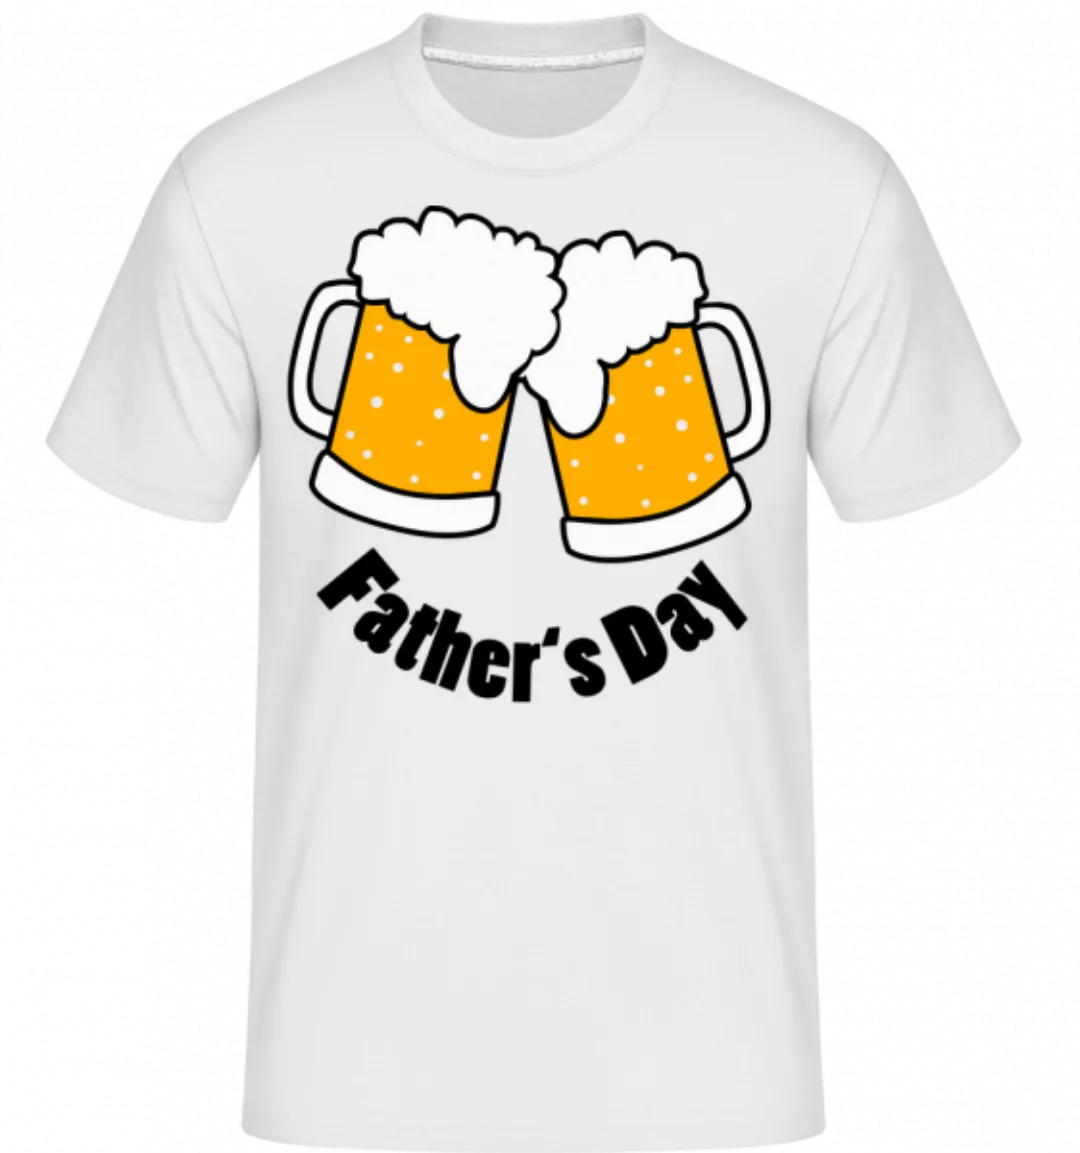 Father's Day Beer · Shirtinator Männer T-Shirt günstig online kaufen